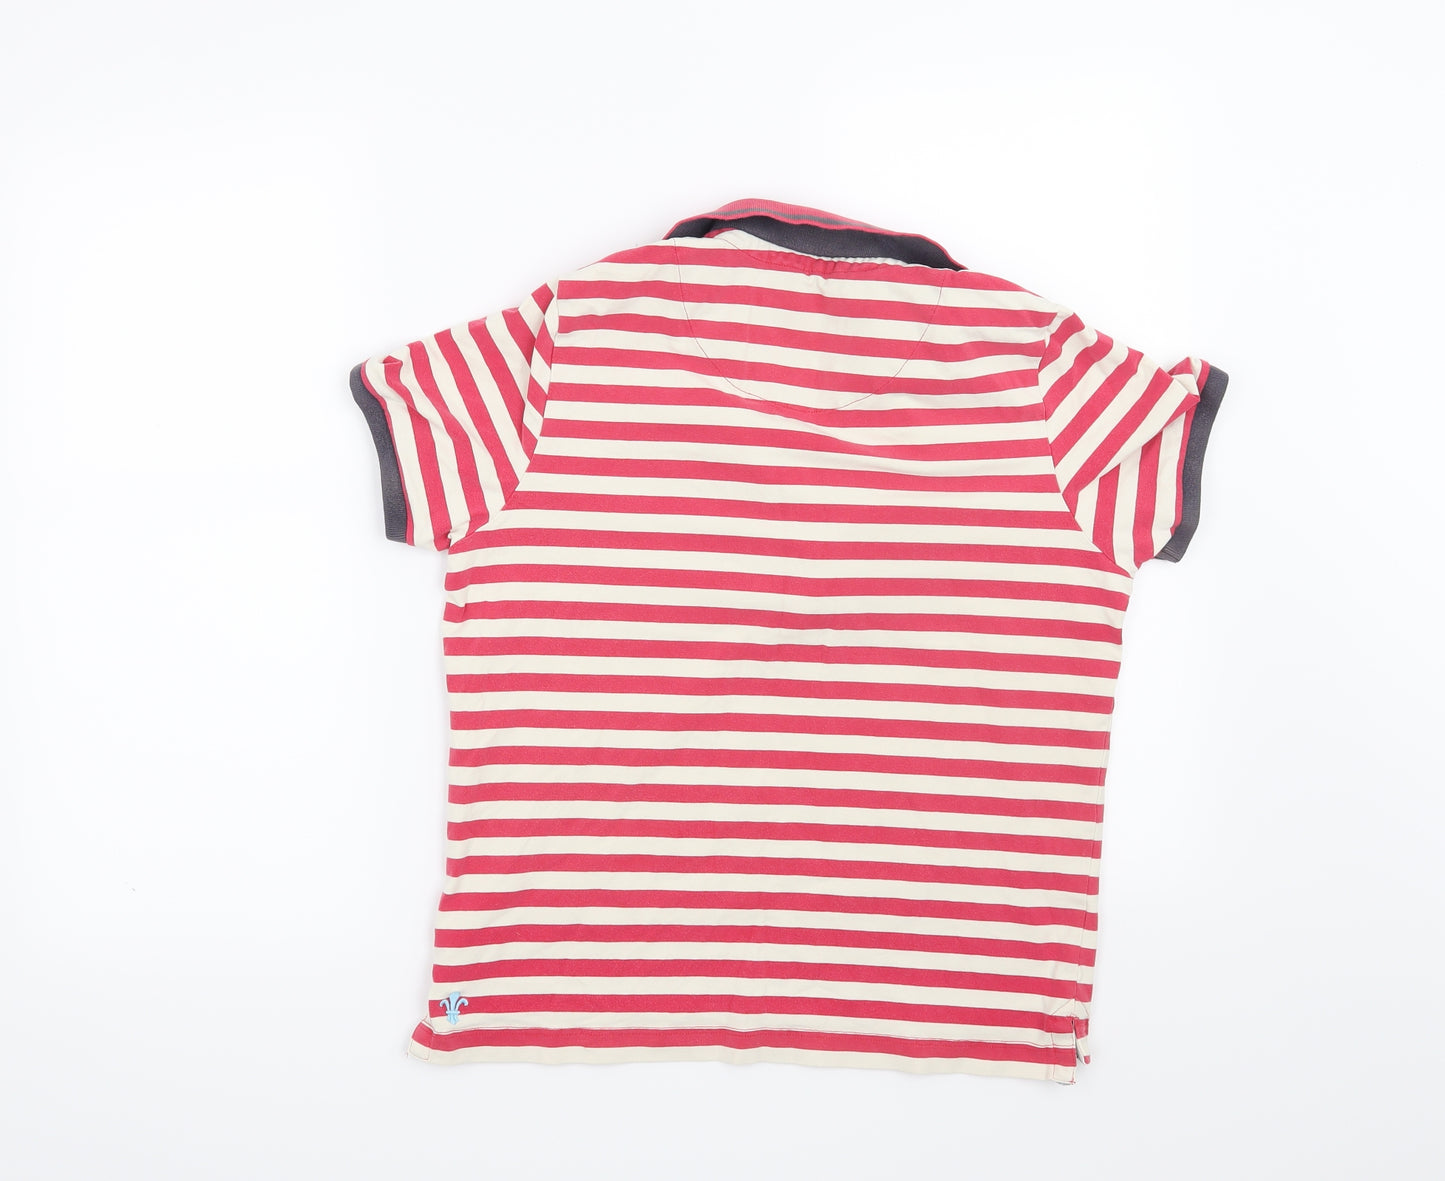 Toggi Womens Pink Striped  Basic T-Shirt Size 16